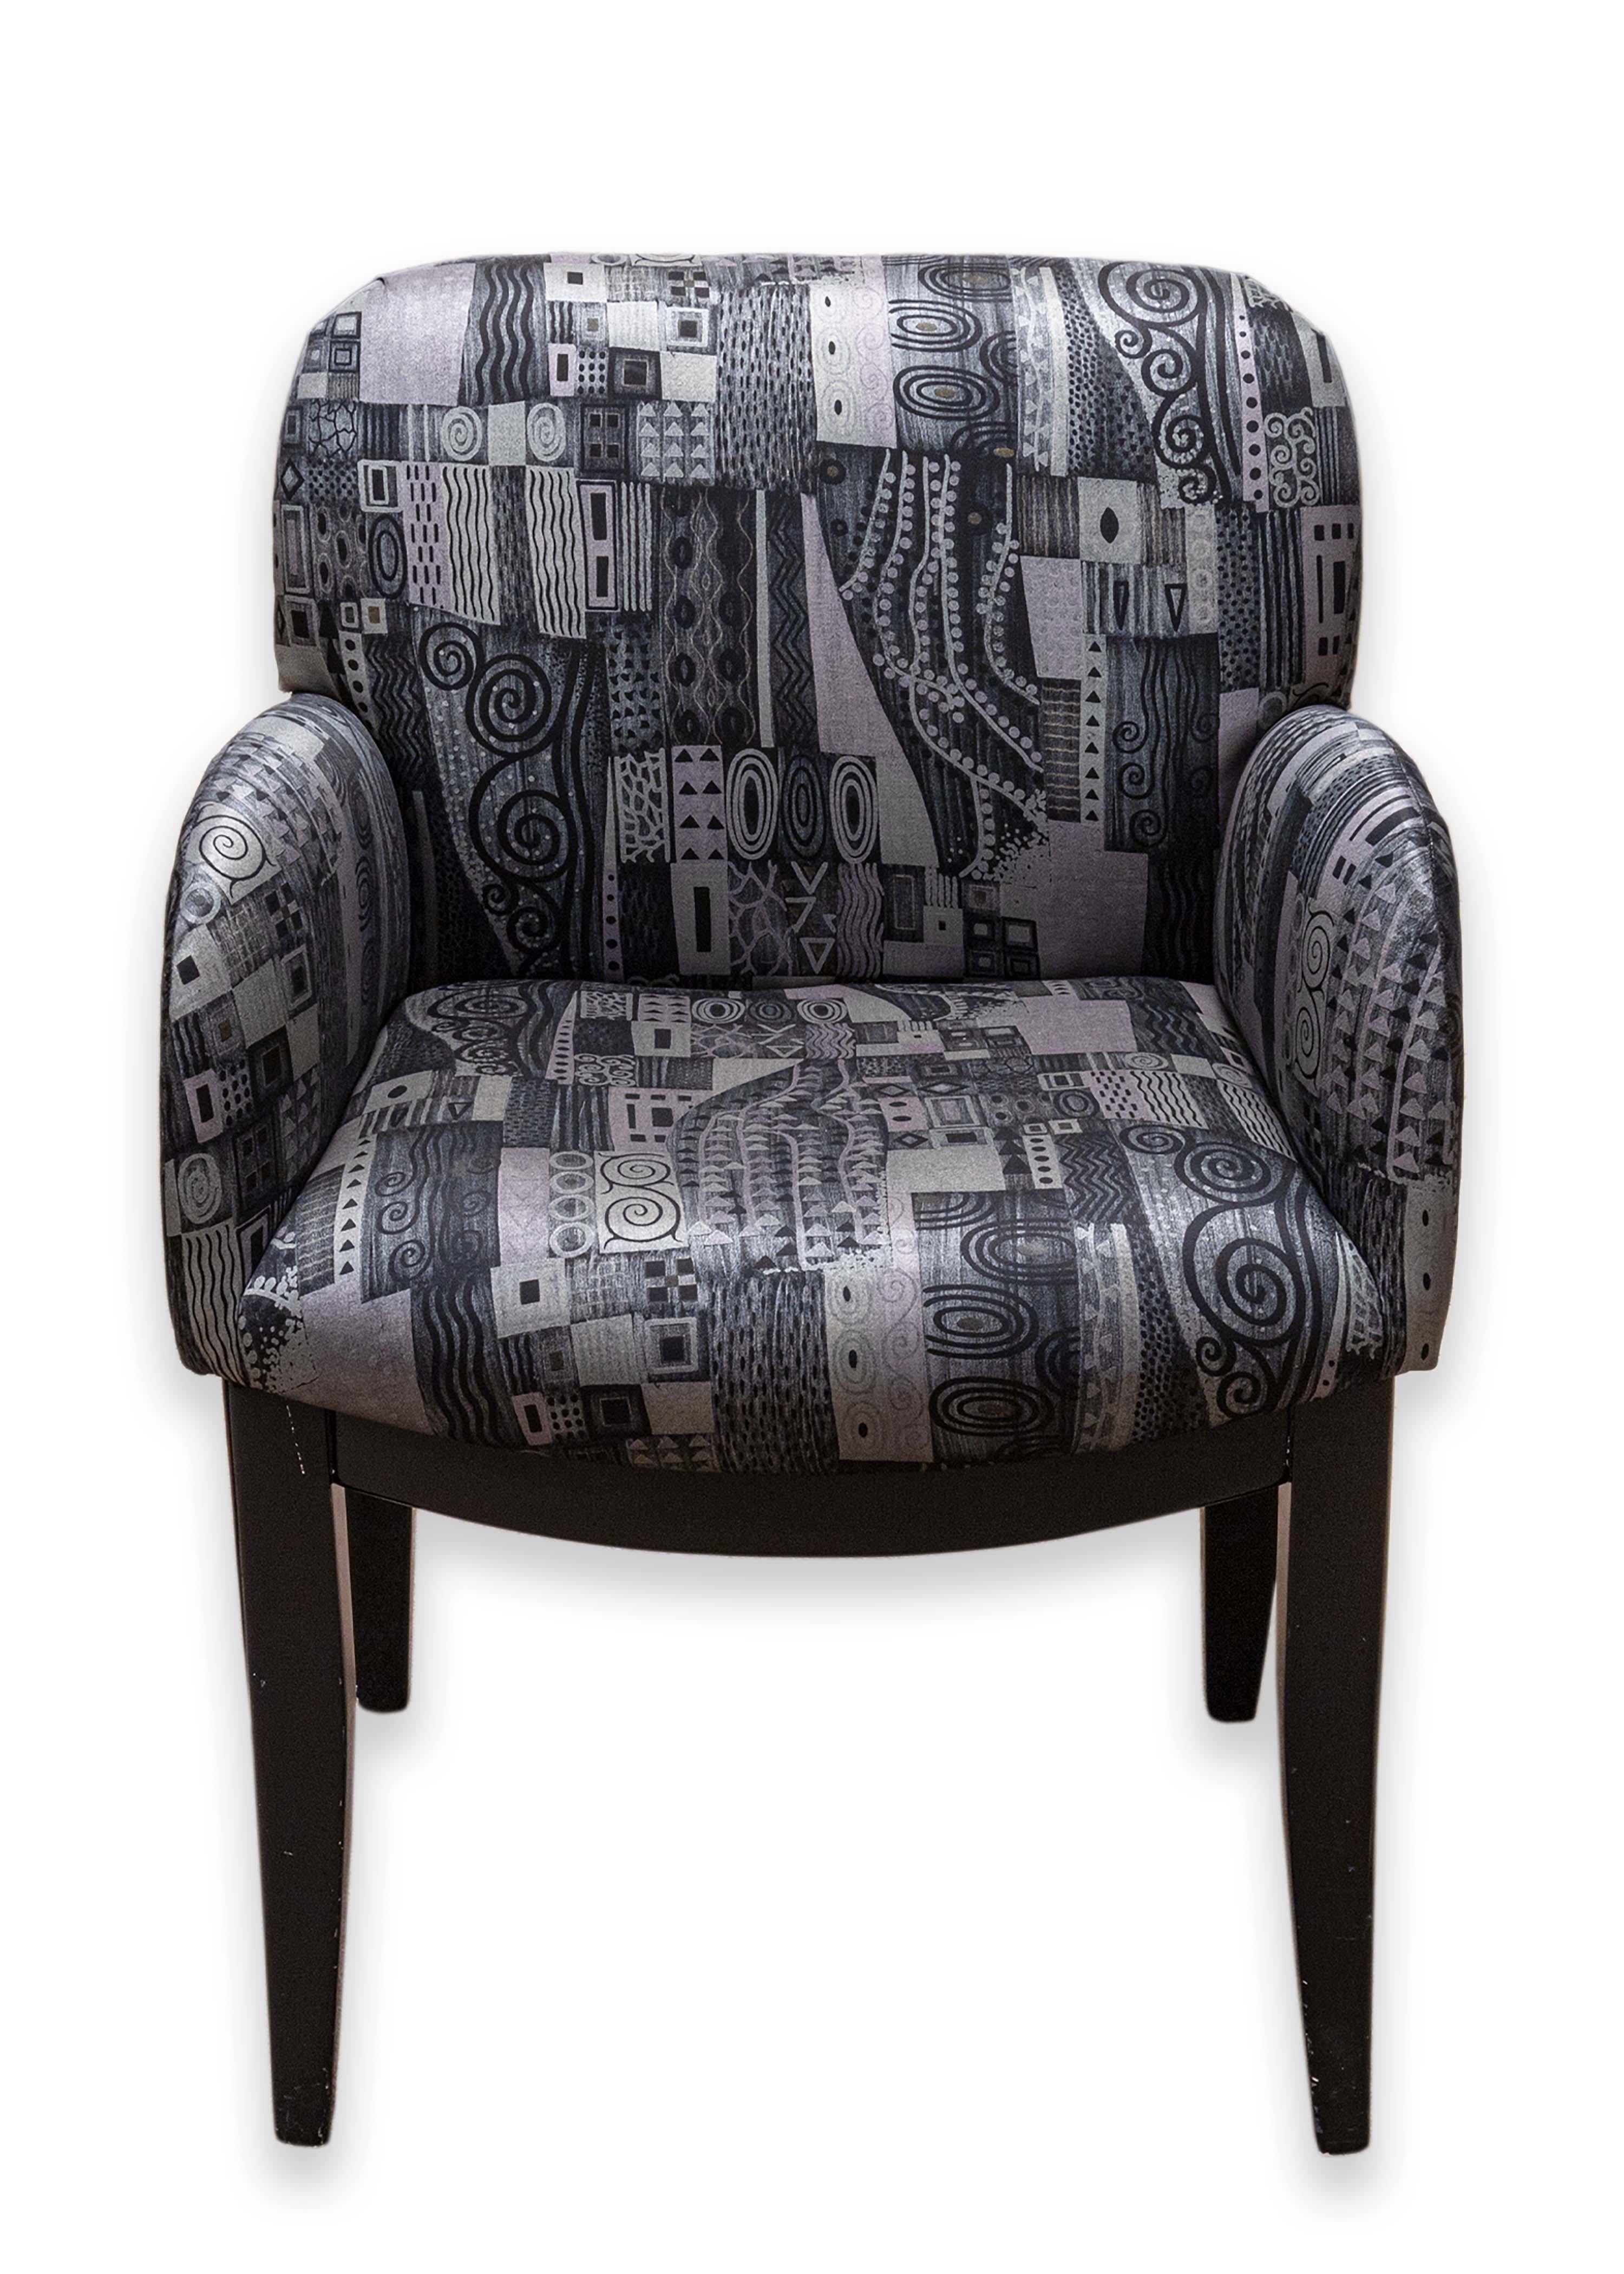 Un ensemble de 4 fauteuils Milo Baughman pour Thayer. Un magnifique ensemble de fauteuils aux motifs fantaisistes. Ces chaises sont ornées d'un motif ludique dans les tons noir/gris/violet/bleu. Chacune de ces chaises est entièrement rembourrée. Ces